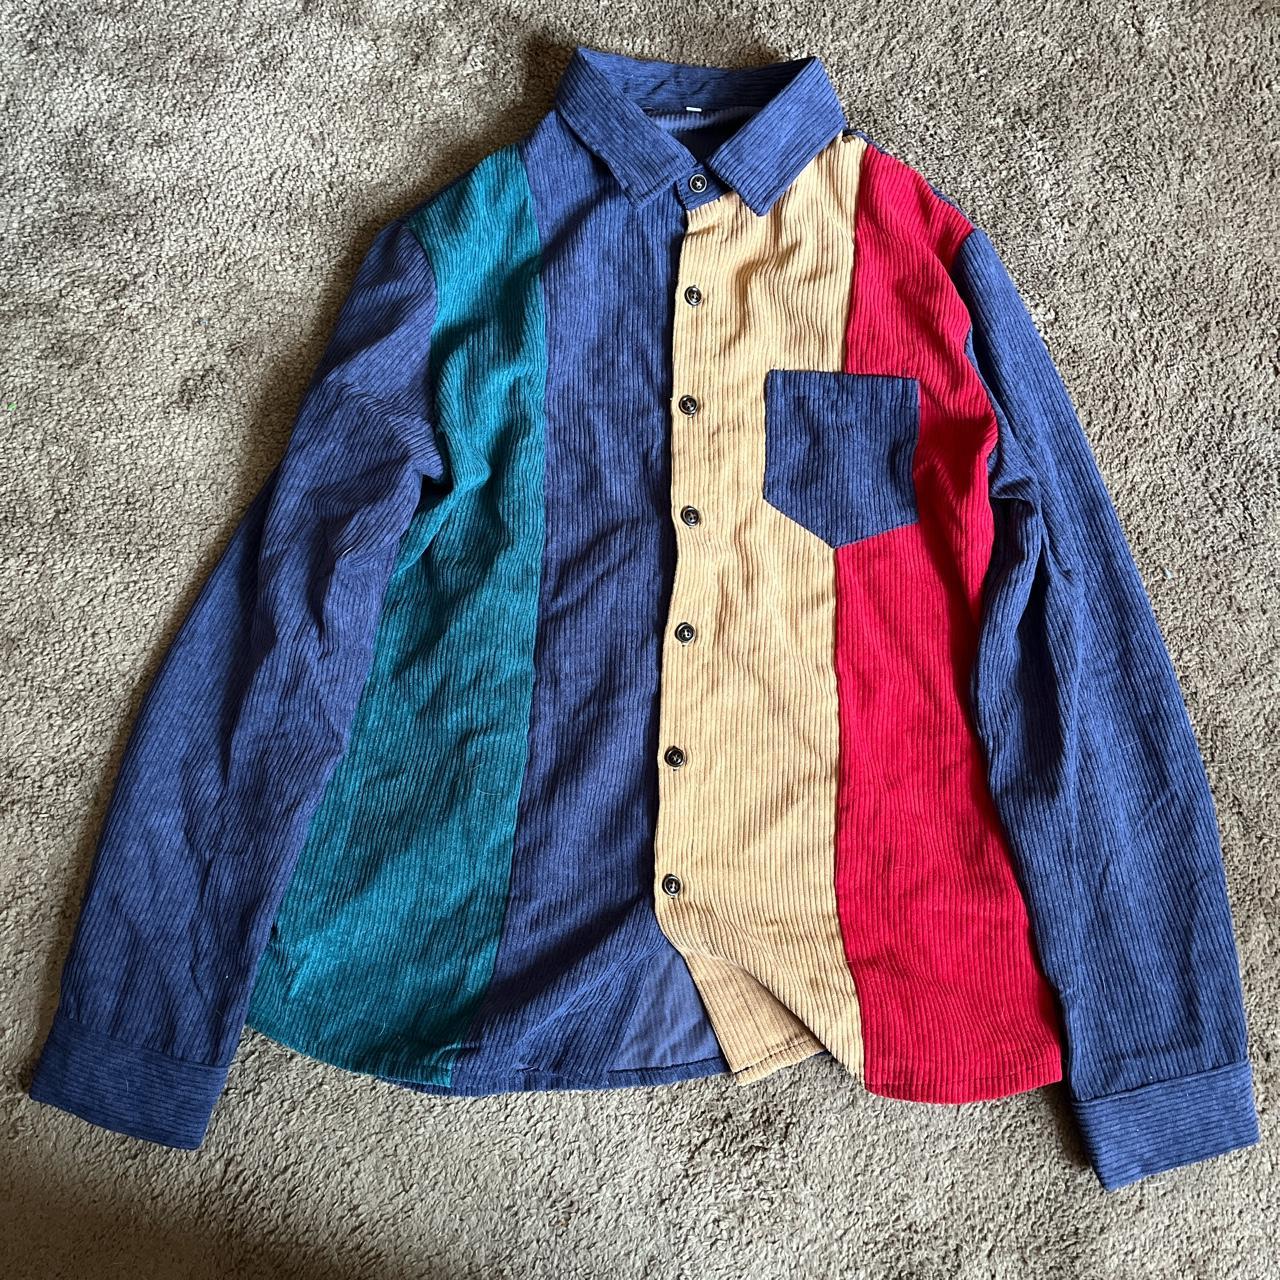 Men Color Block Patched Pocket Corduroy Shirt I... - Depop